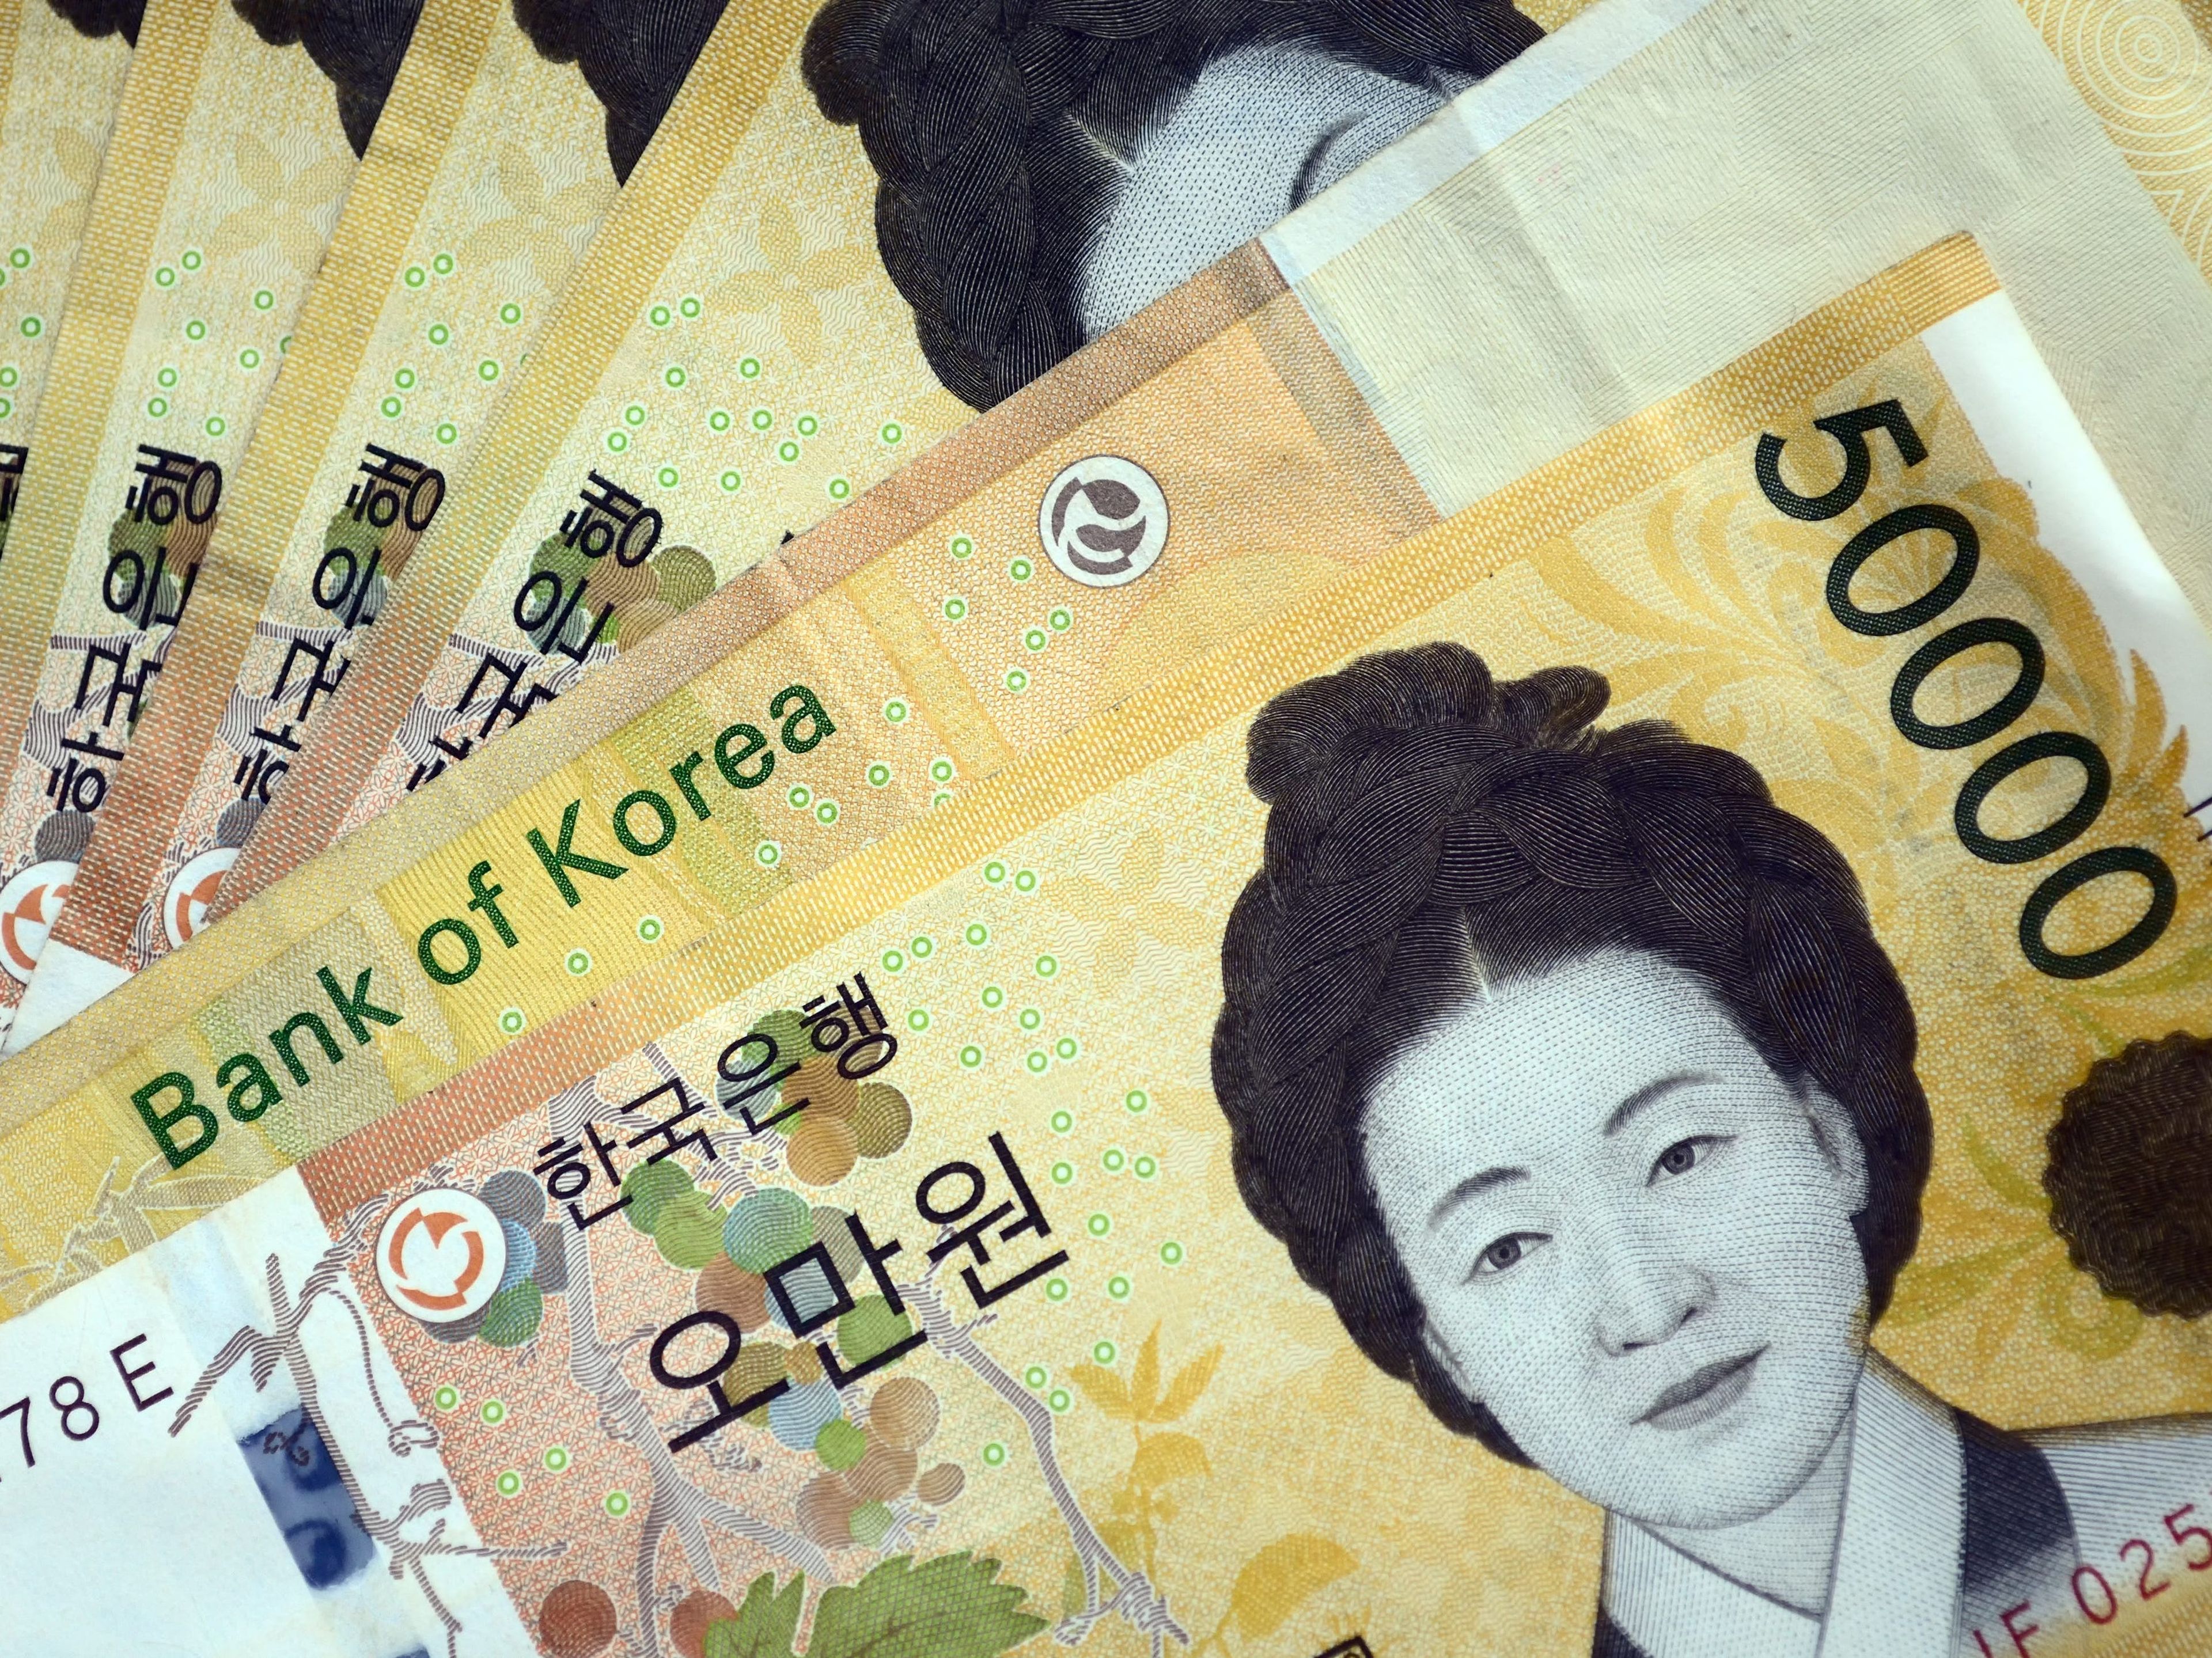 El endeudamiento de los hogares surcoreanos superó los 1,5 billones de dólares en agosto, alcanzando cifras récord e impulsando a los bancos a imponer tipos de interés más altos para frenar el gasto imprudente.